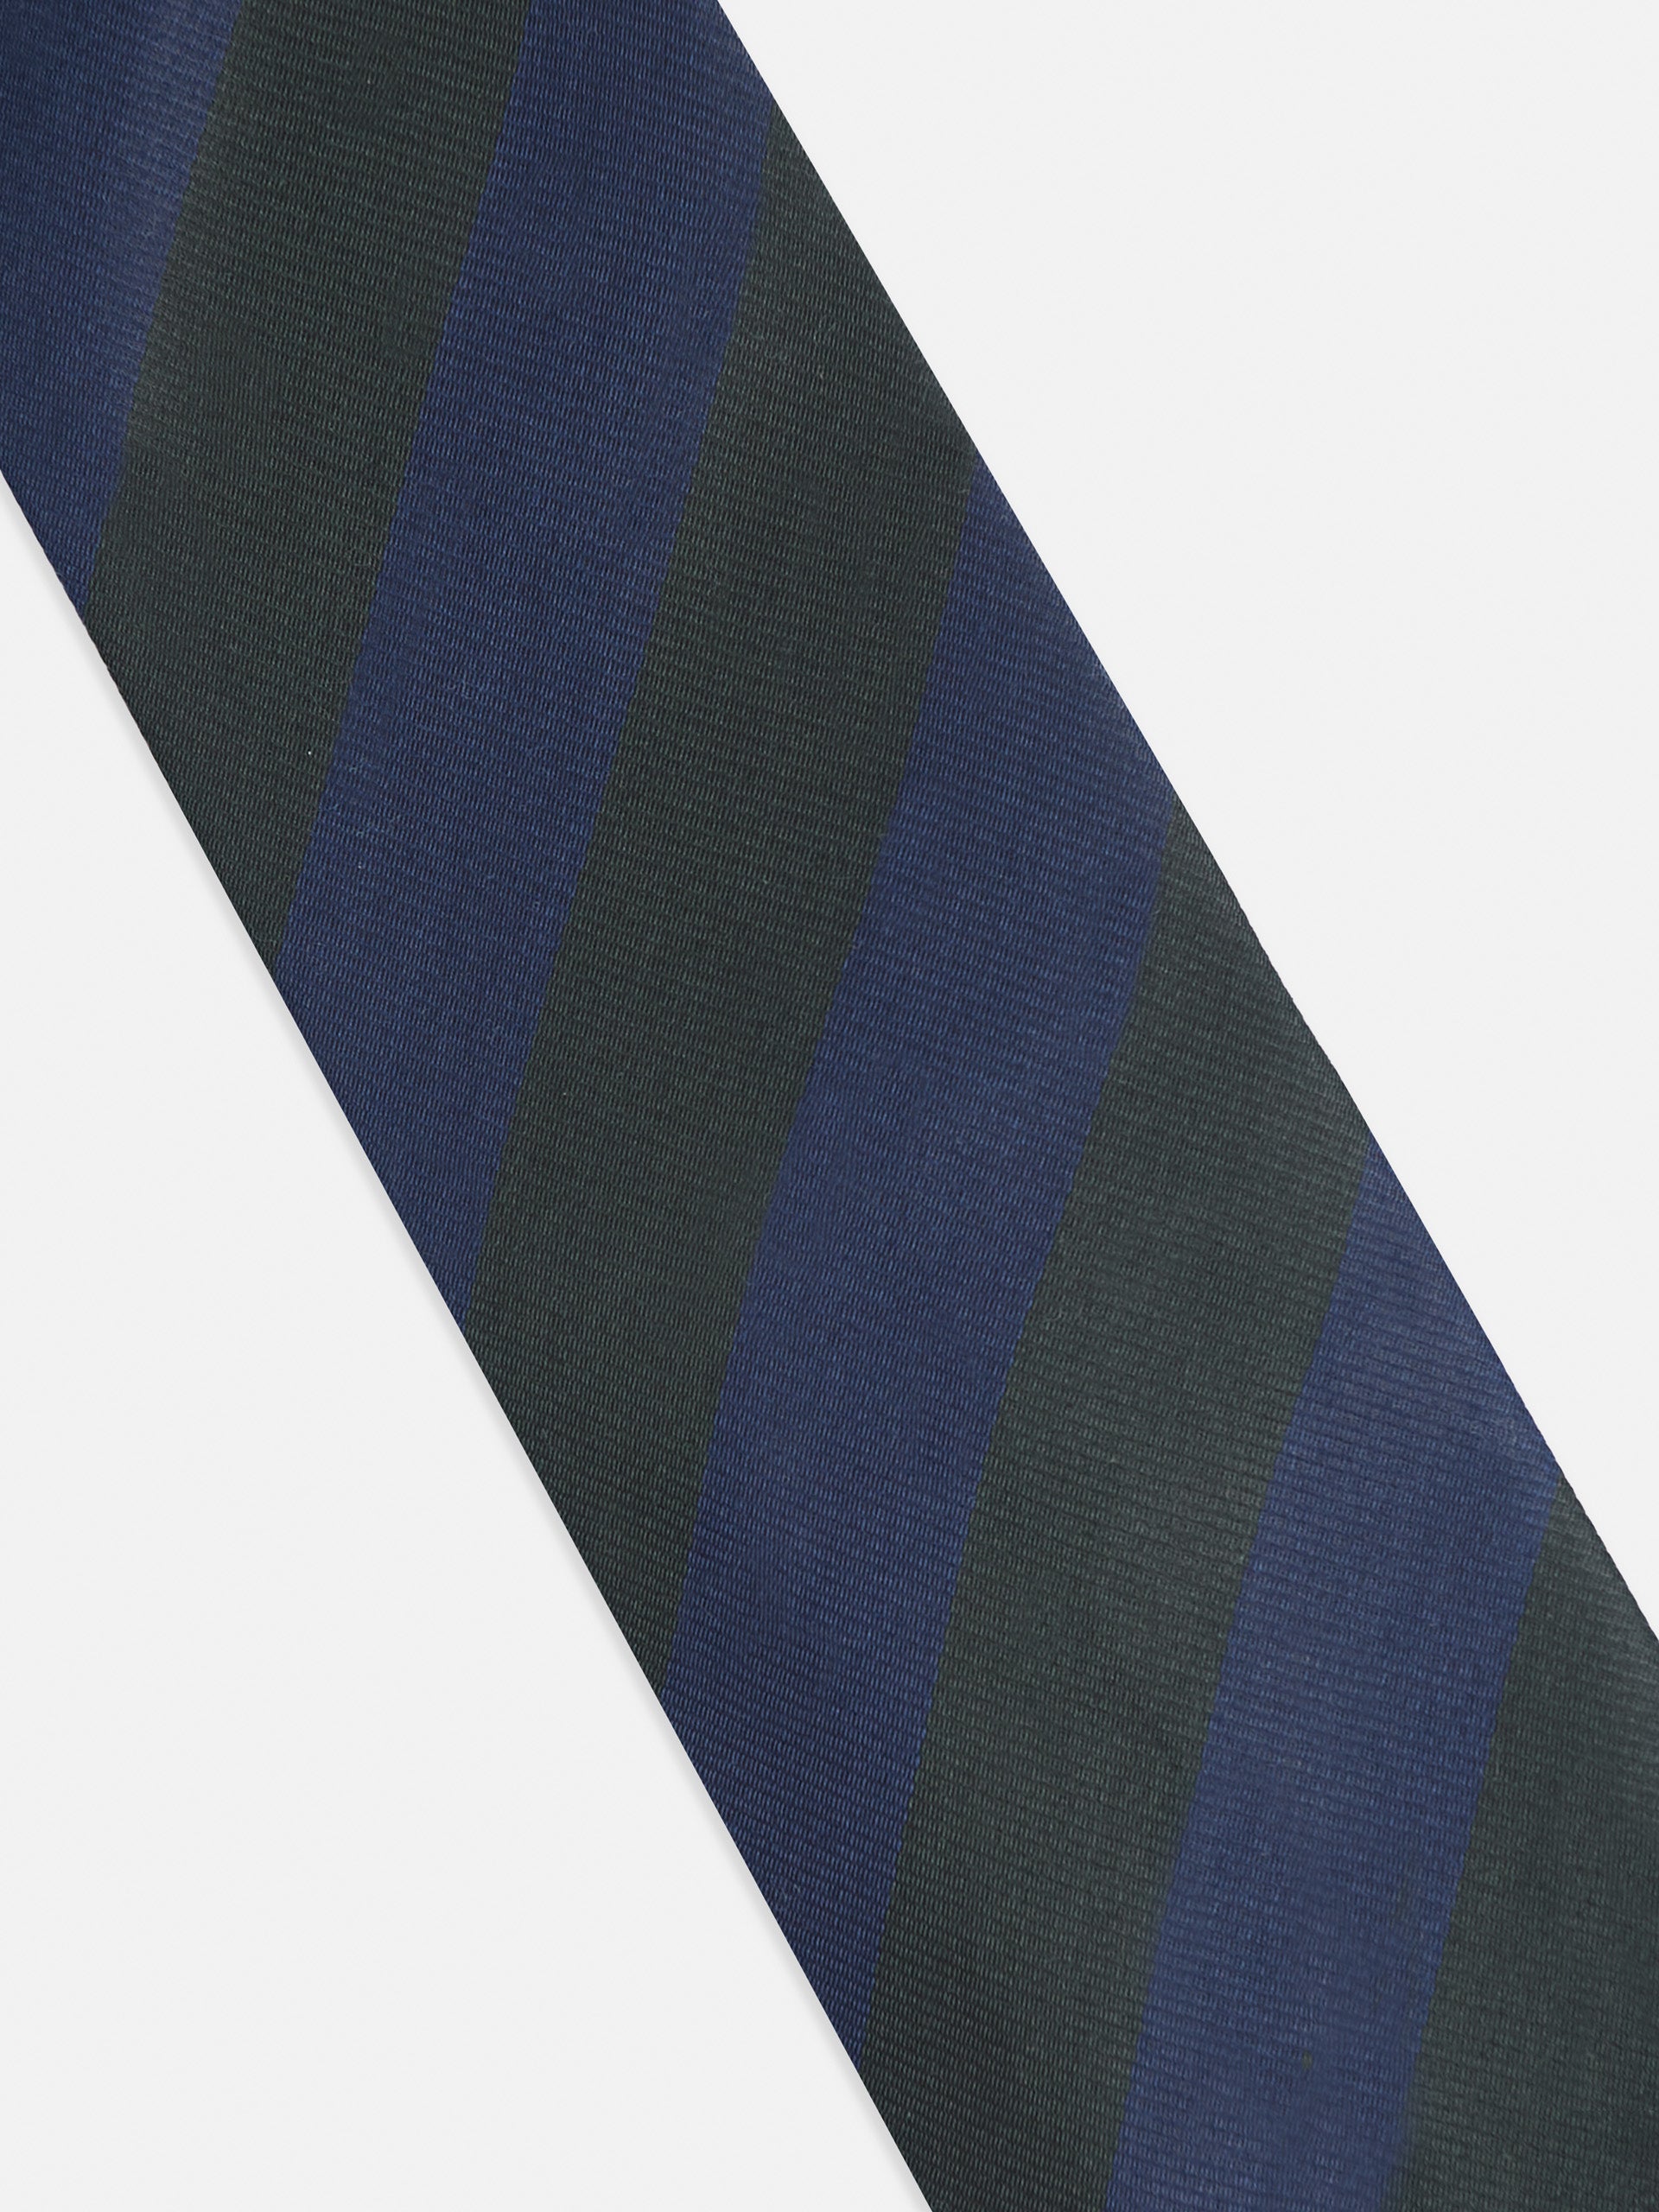 Cravate verte à rayures diagonales